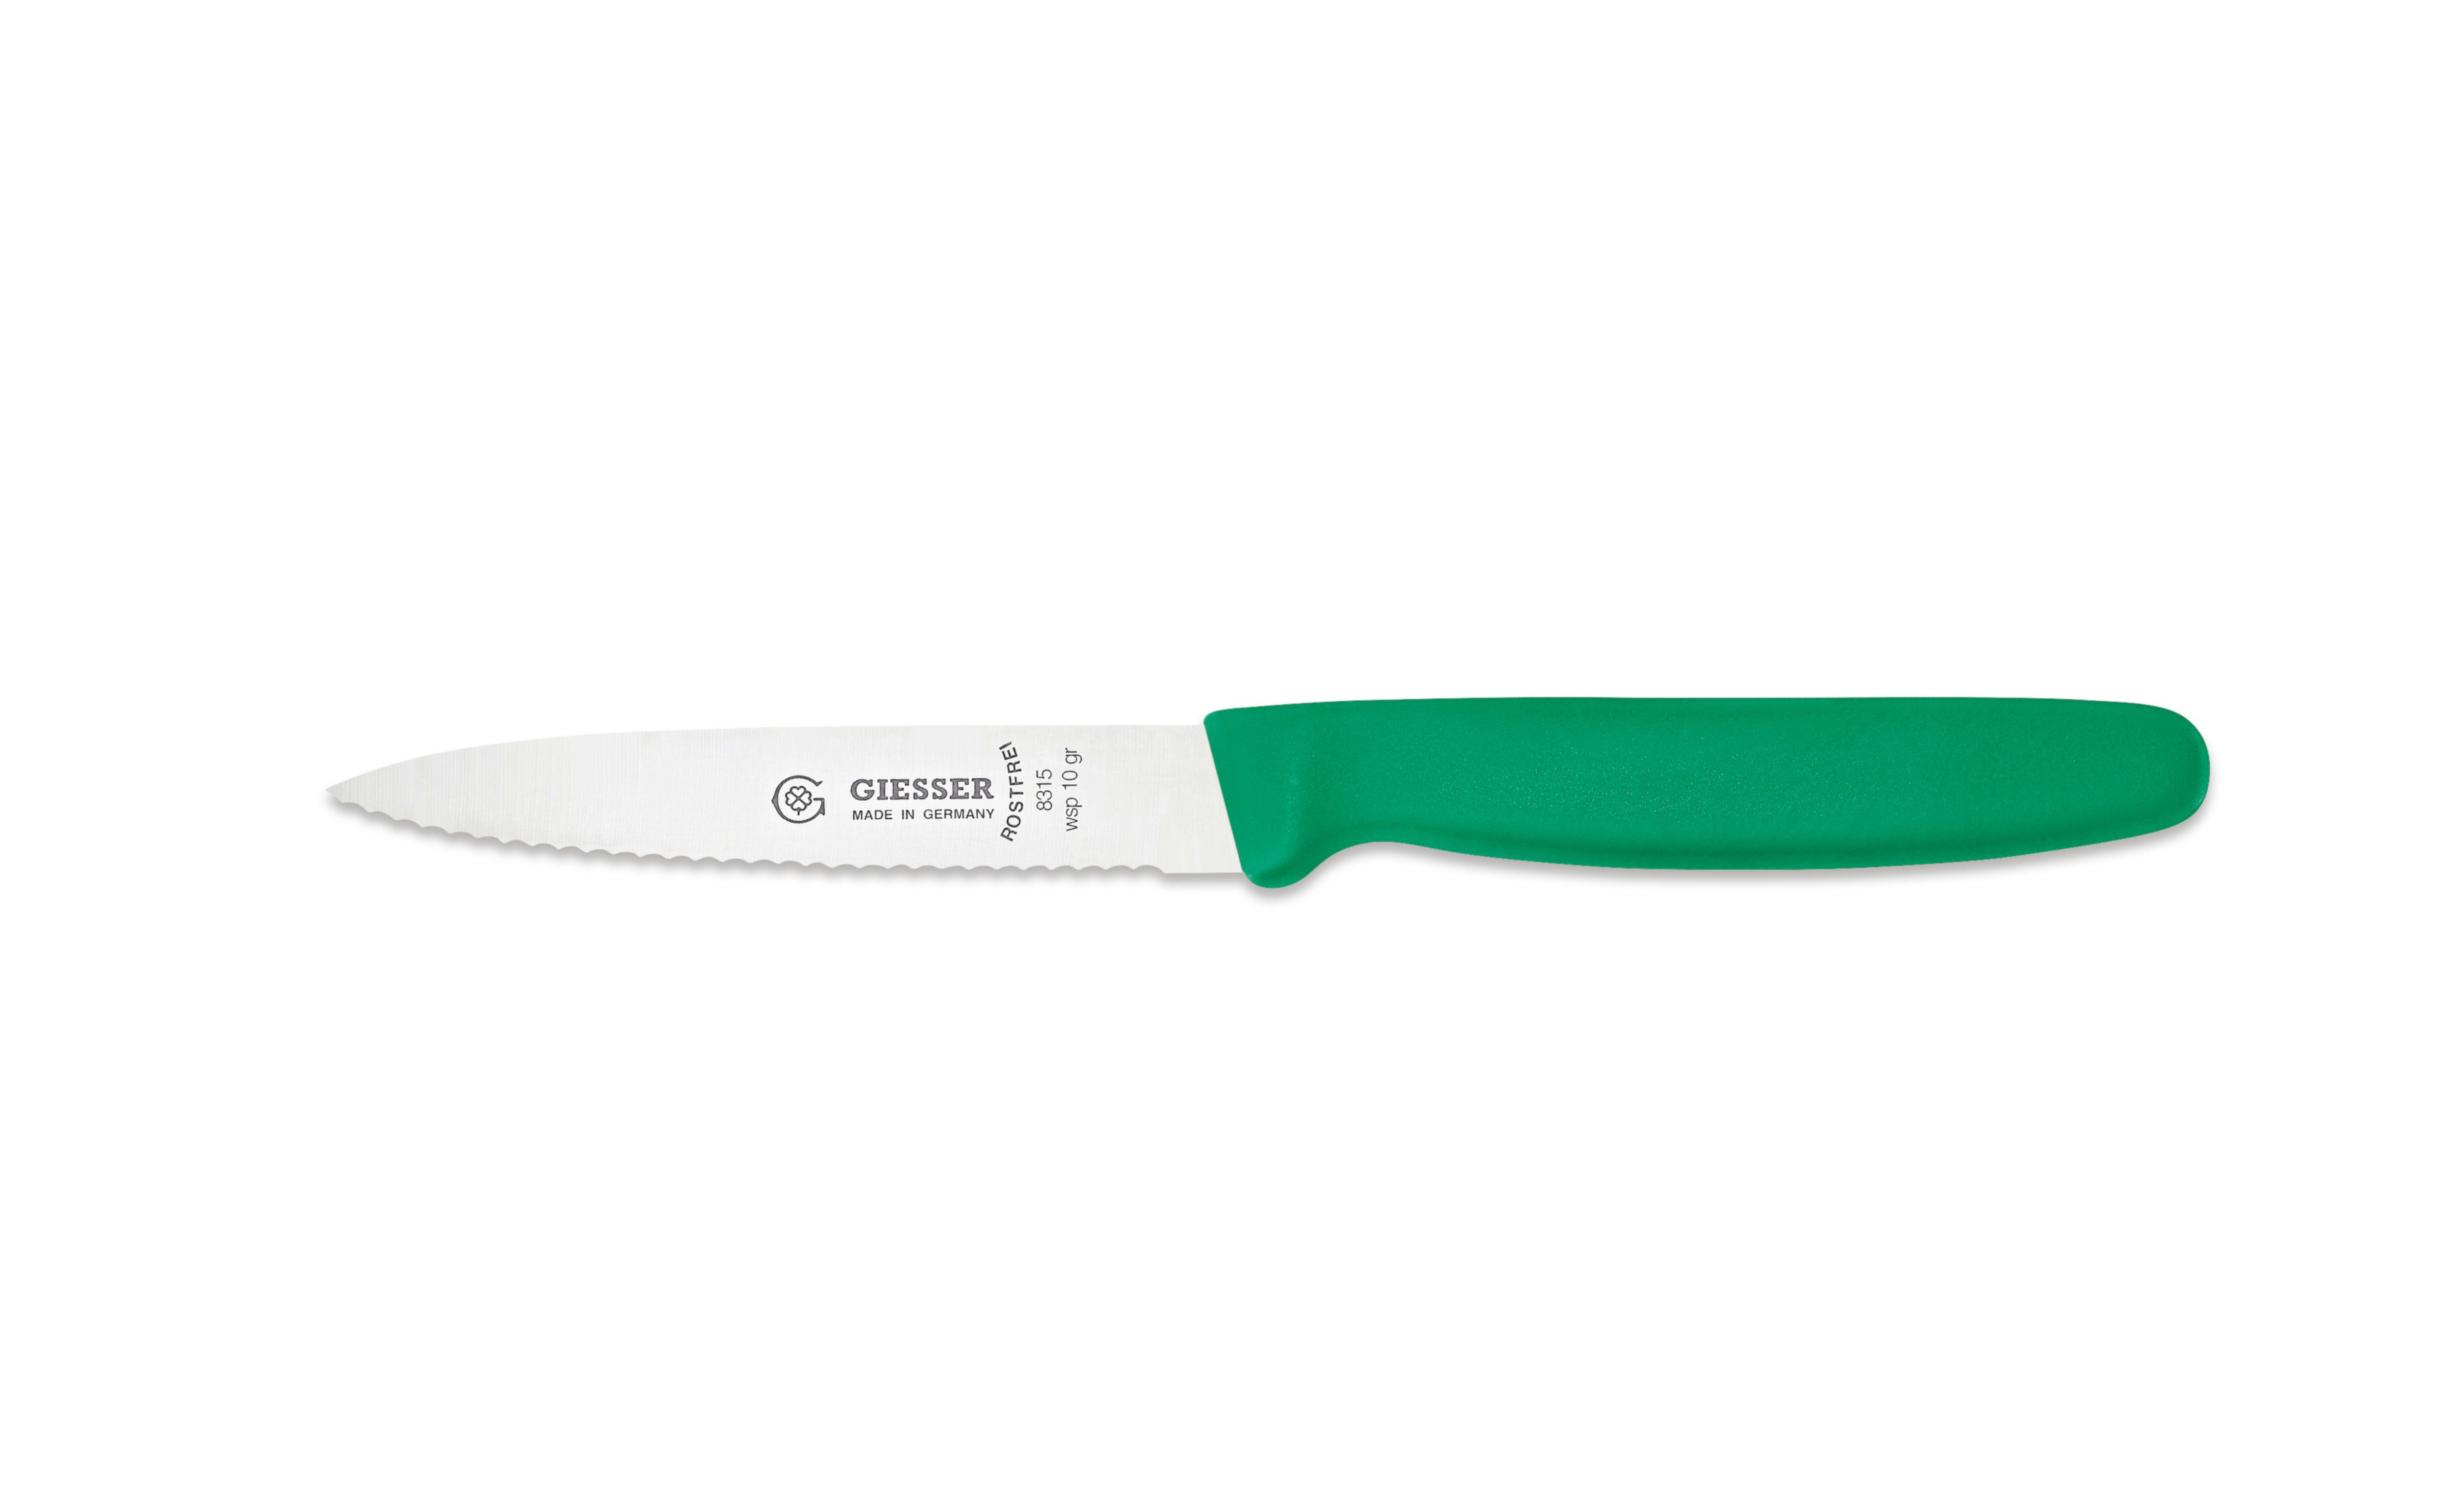 Messer Welle sp 3mm - Wellenschliff Küchenmesser 8315 Grün ohne mit Gemüsemesser Spickmesser 8/10/12, oder Giesser